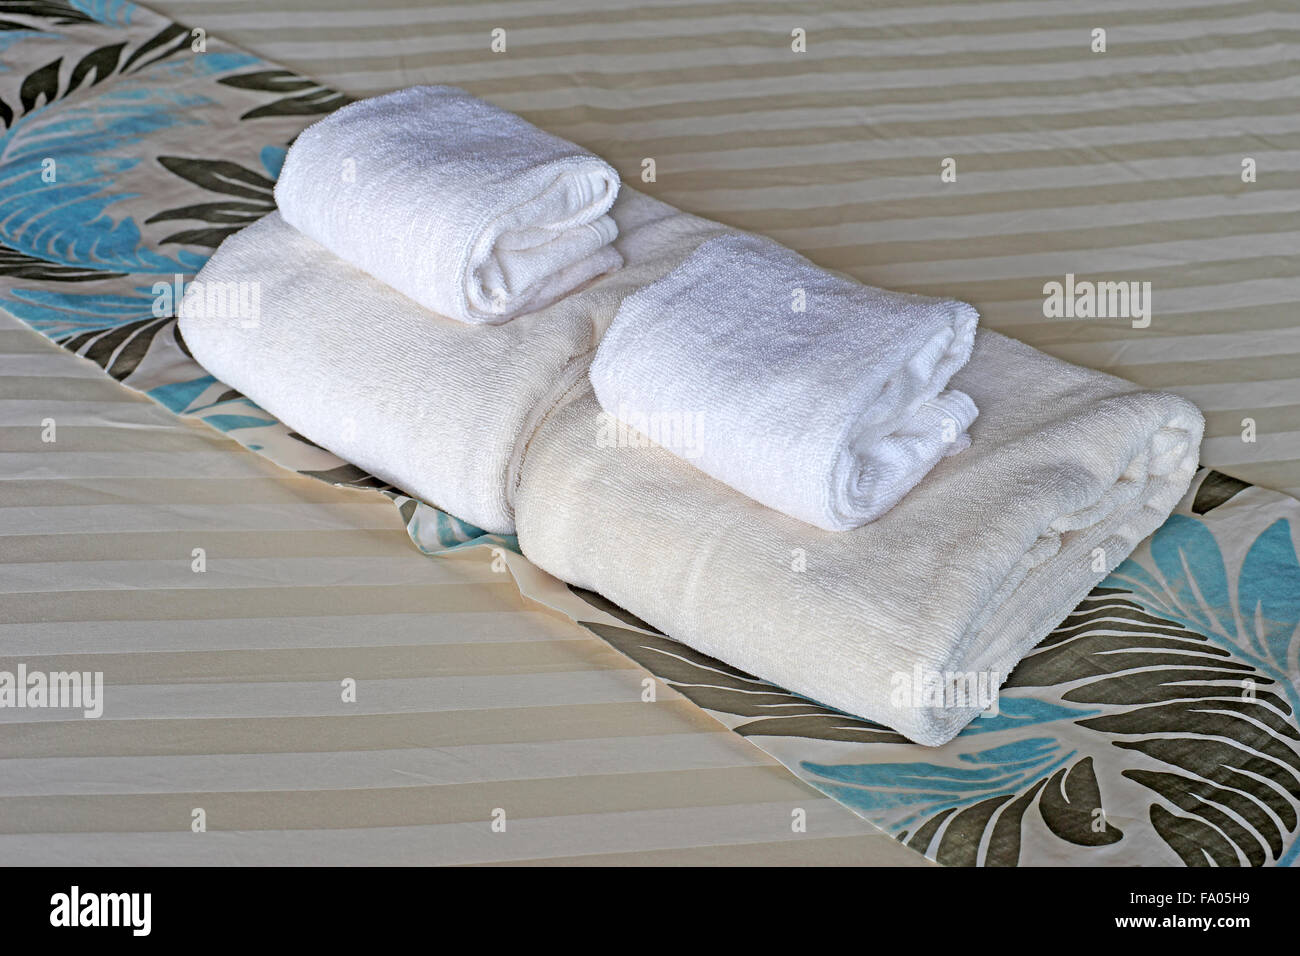 Serviettes de bain blanc roula et empilés sur le lit Banque D'Images